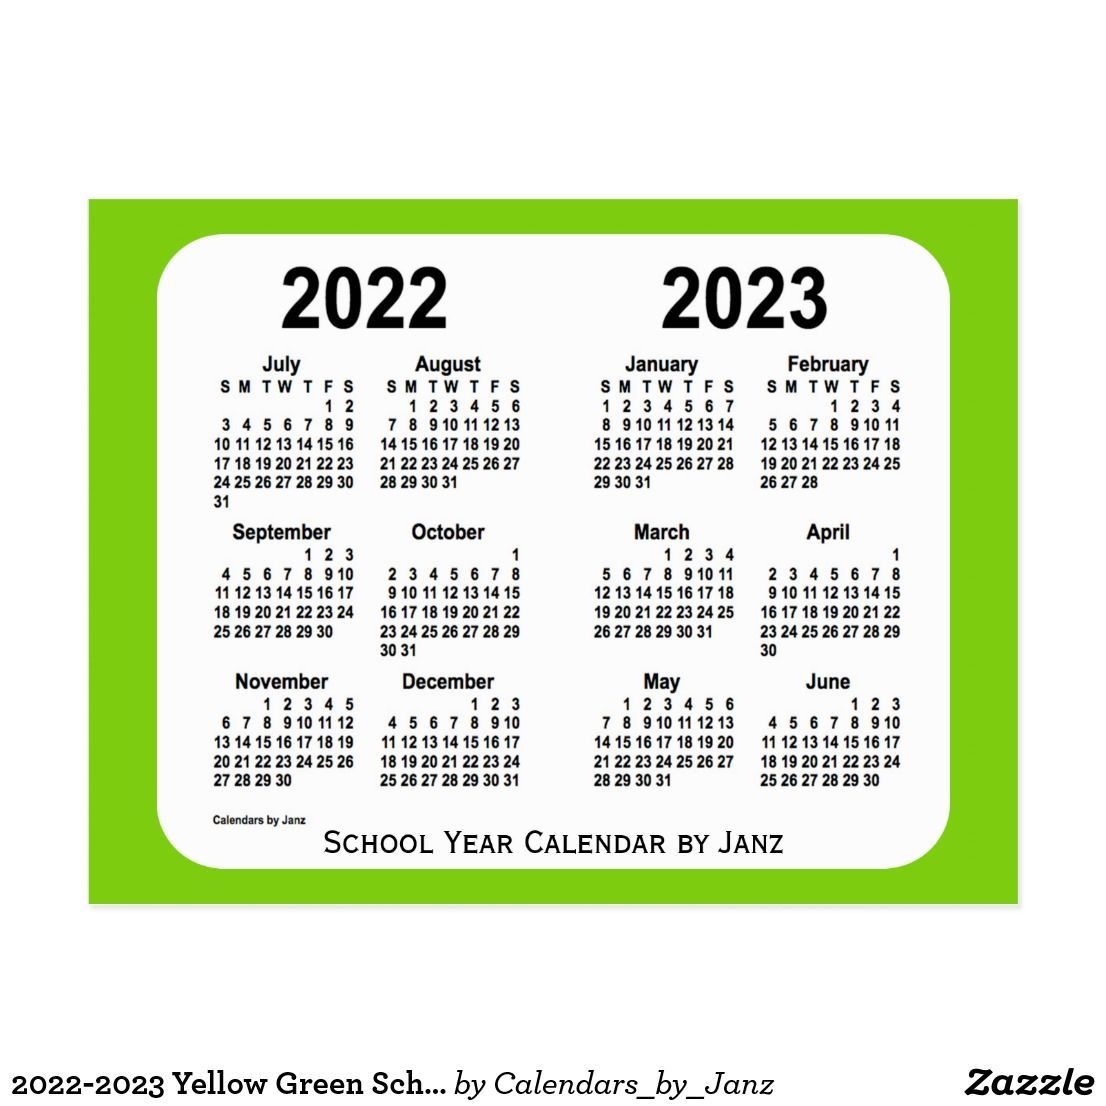 2022-2023 Yellow Green School Calendar By Janz Postcard